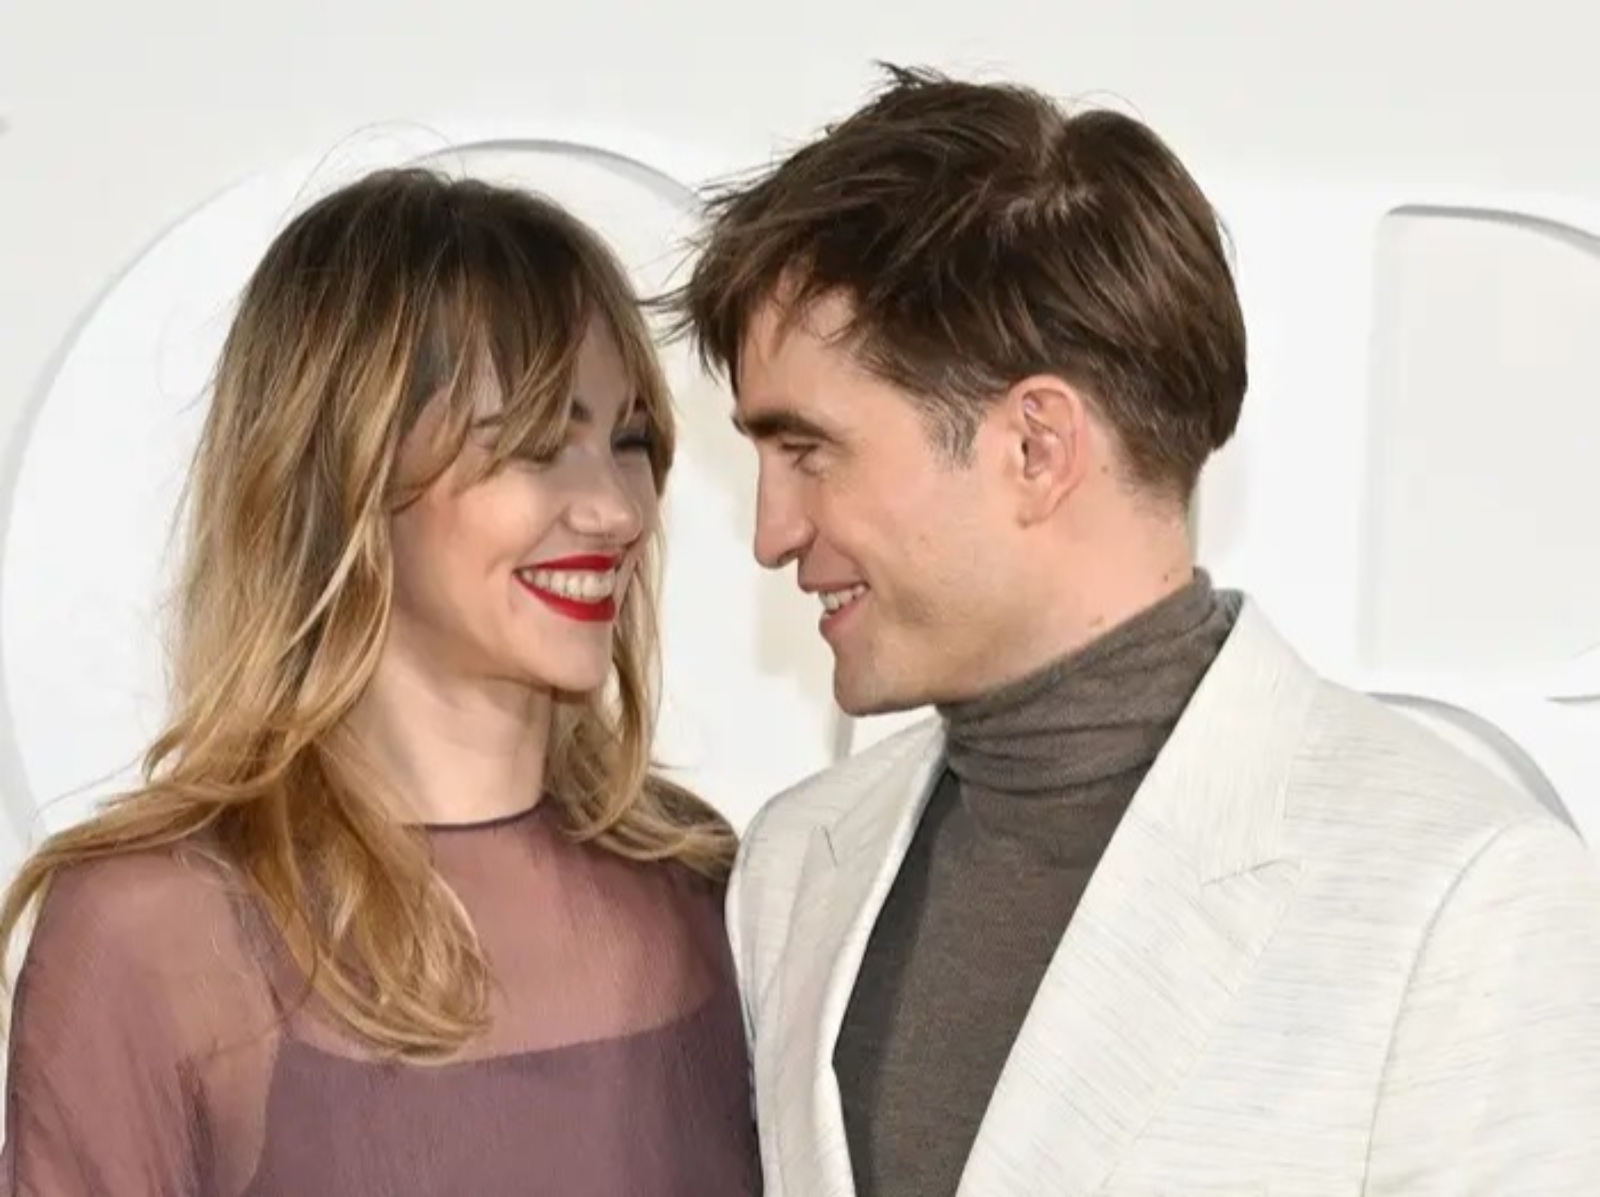 羅伯派汀森 Robert Pattinson 帶女友 Suki Waterhouse 出席活動，21 秒不安分小手片段曝光引網哭：「我失戀了！」